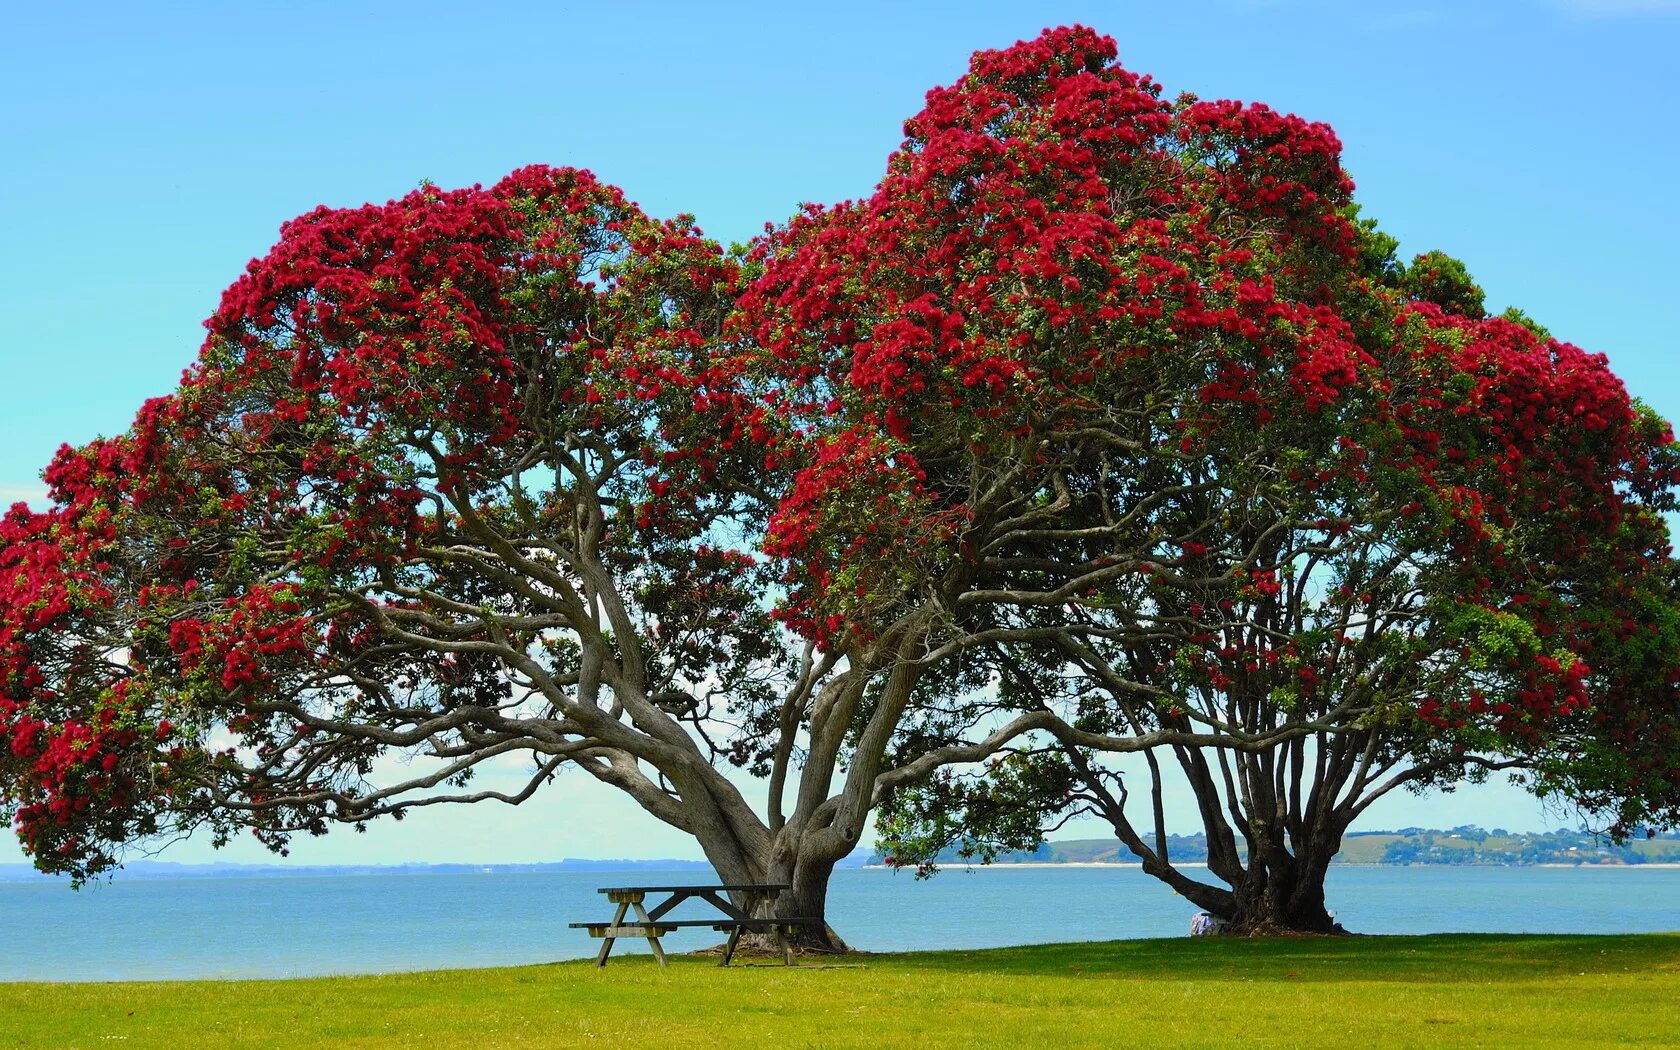 Метросидерос зонтичный. Новая Зеландия цветы Похутукава. Метросидерос холмовой. Дерево в новой Зеландии Похутукава. Дерево миллера